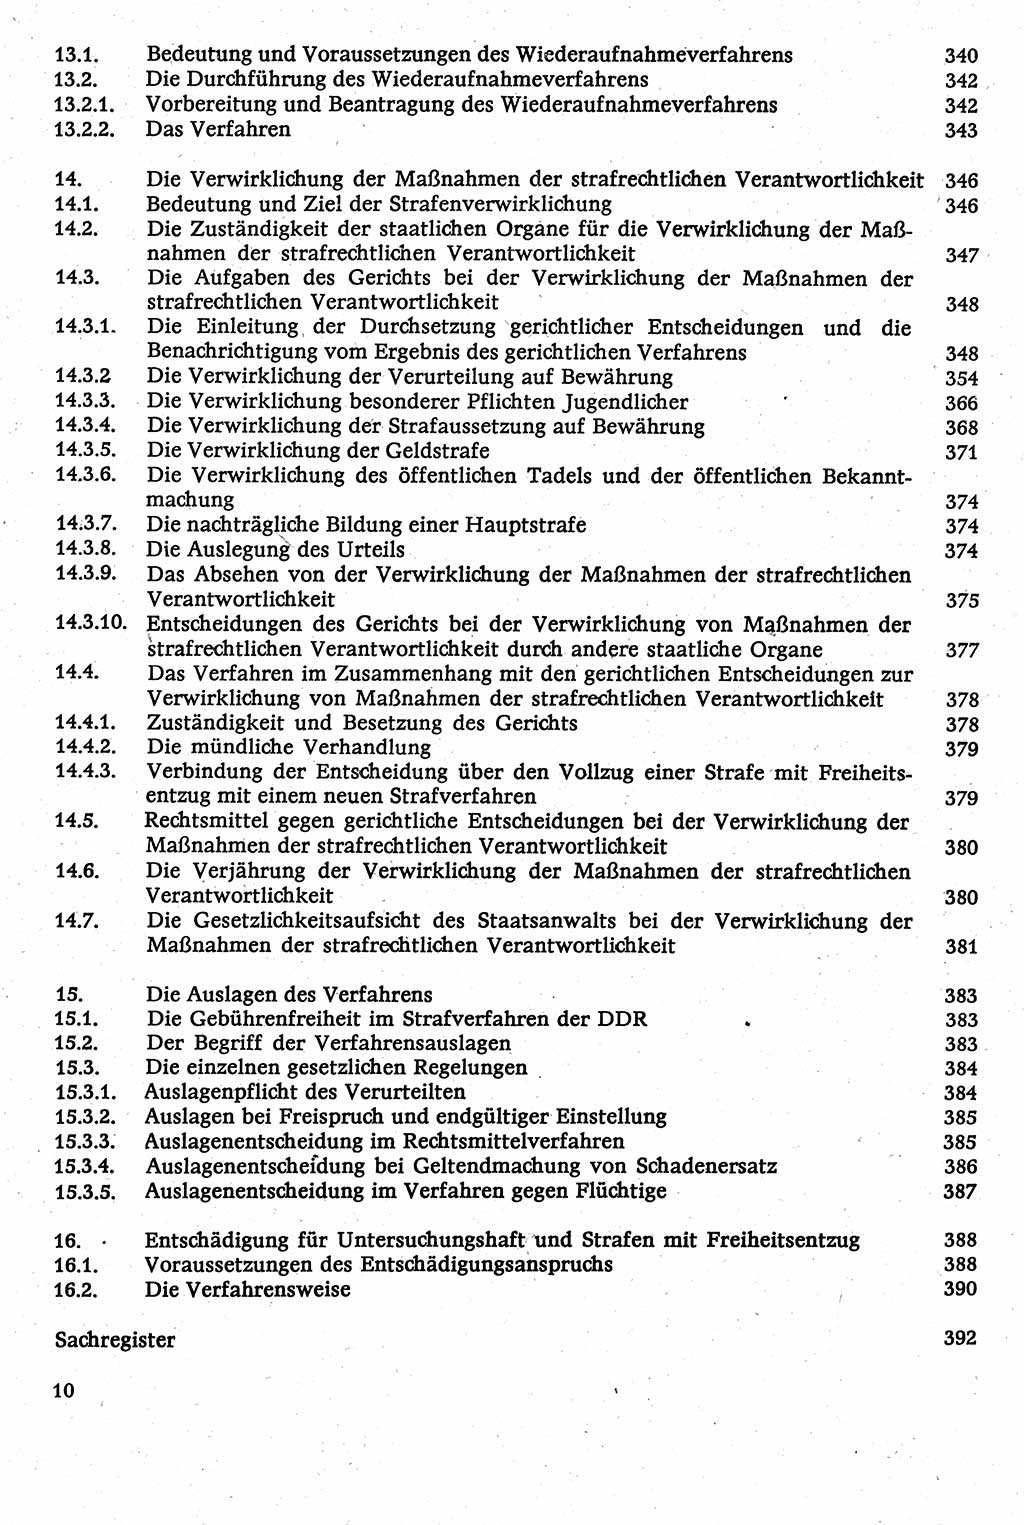 Strafverfahrensrecht [Deutsche Demokratische Republik (DDR)], Lehrbuch 1982, Seite 10 (Strafverf.-R. DDR Lb. 1982, S. 10)